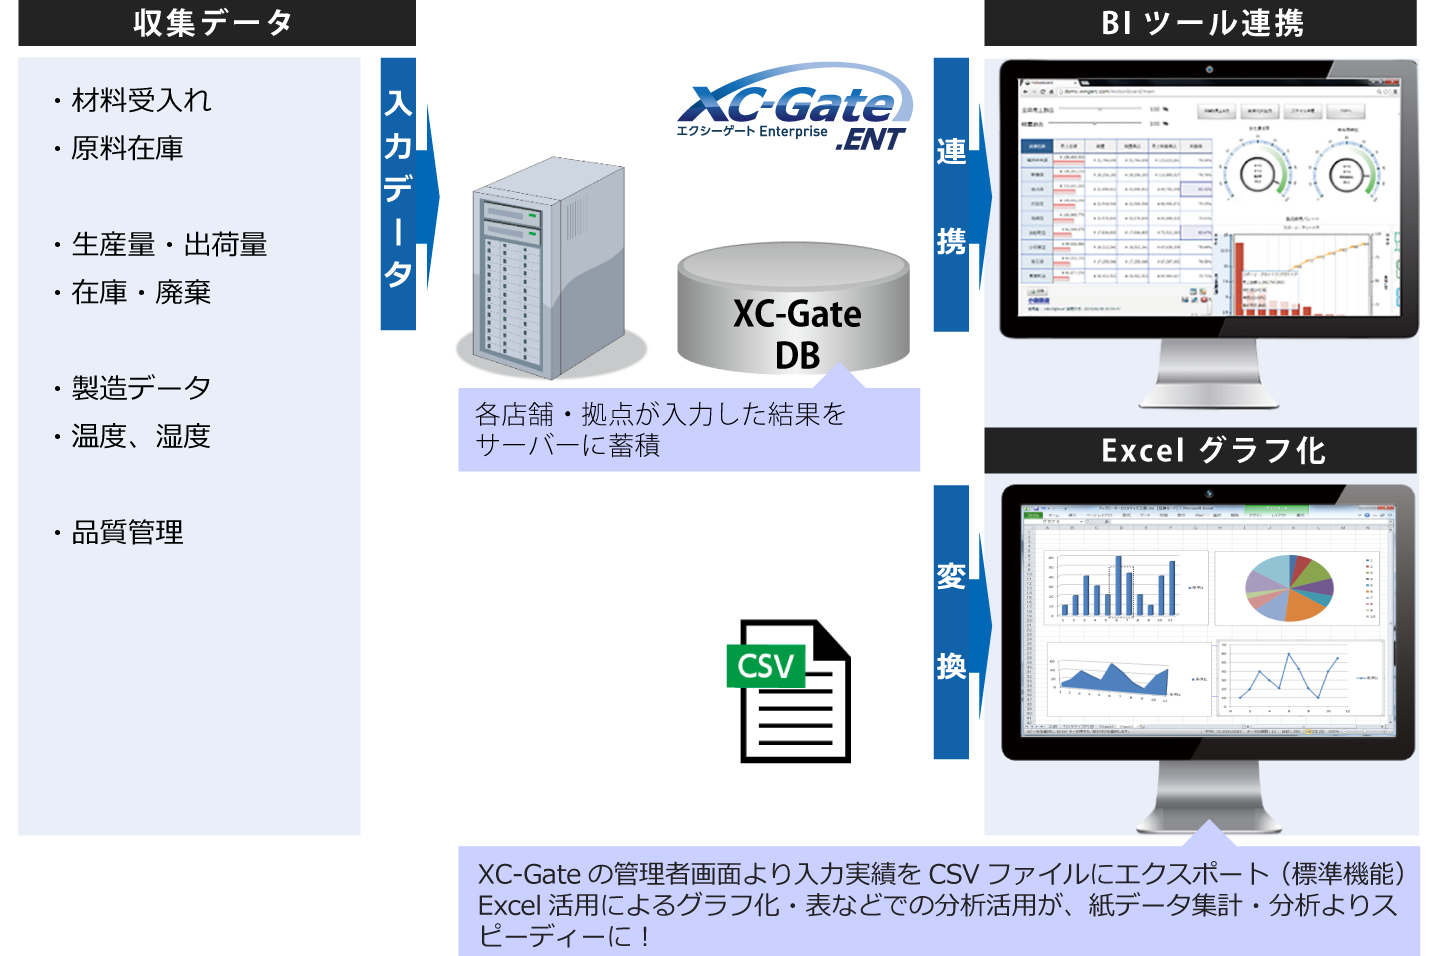  XC-Gate 活用例 ③「データの分析活用」